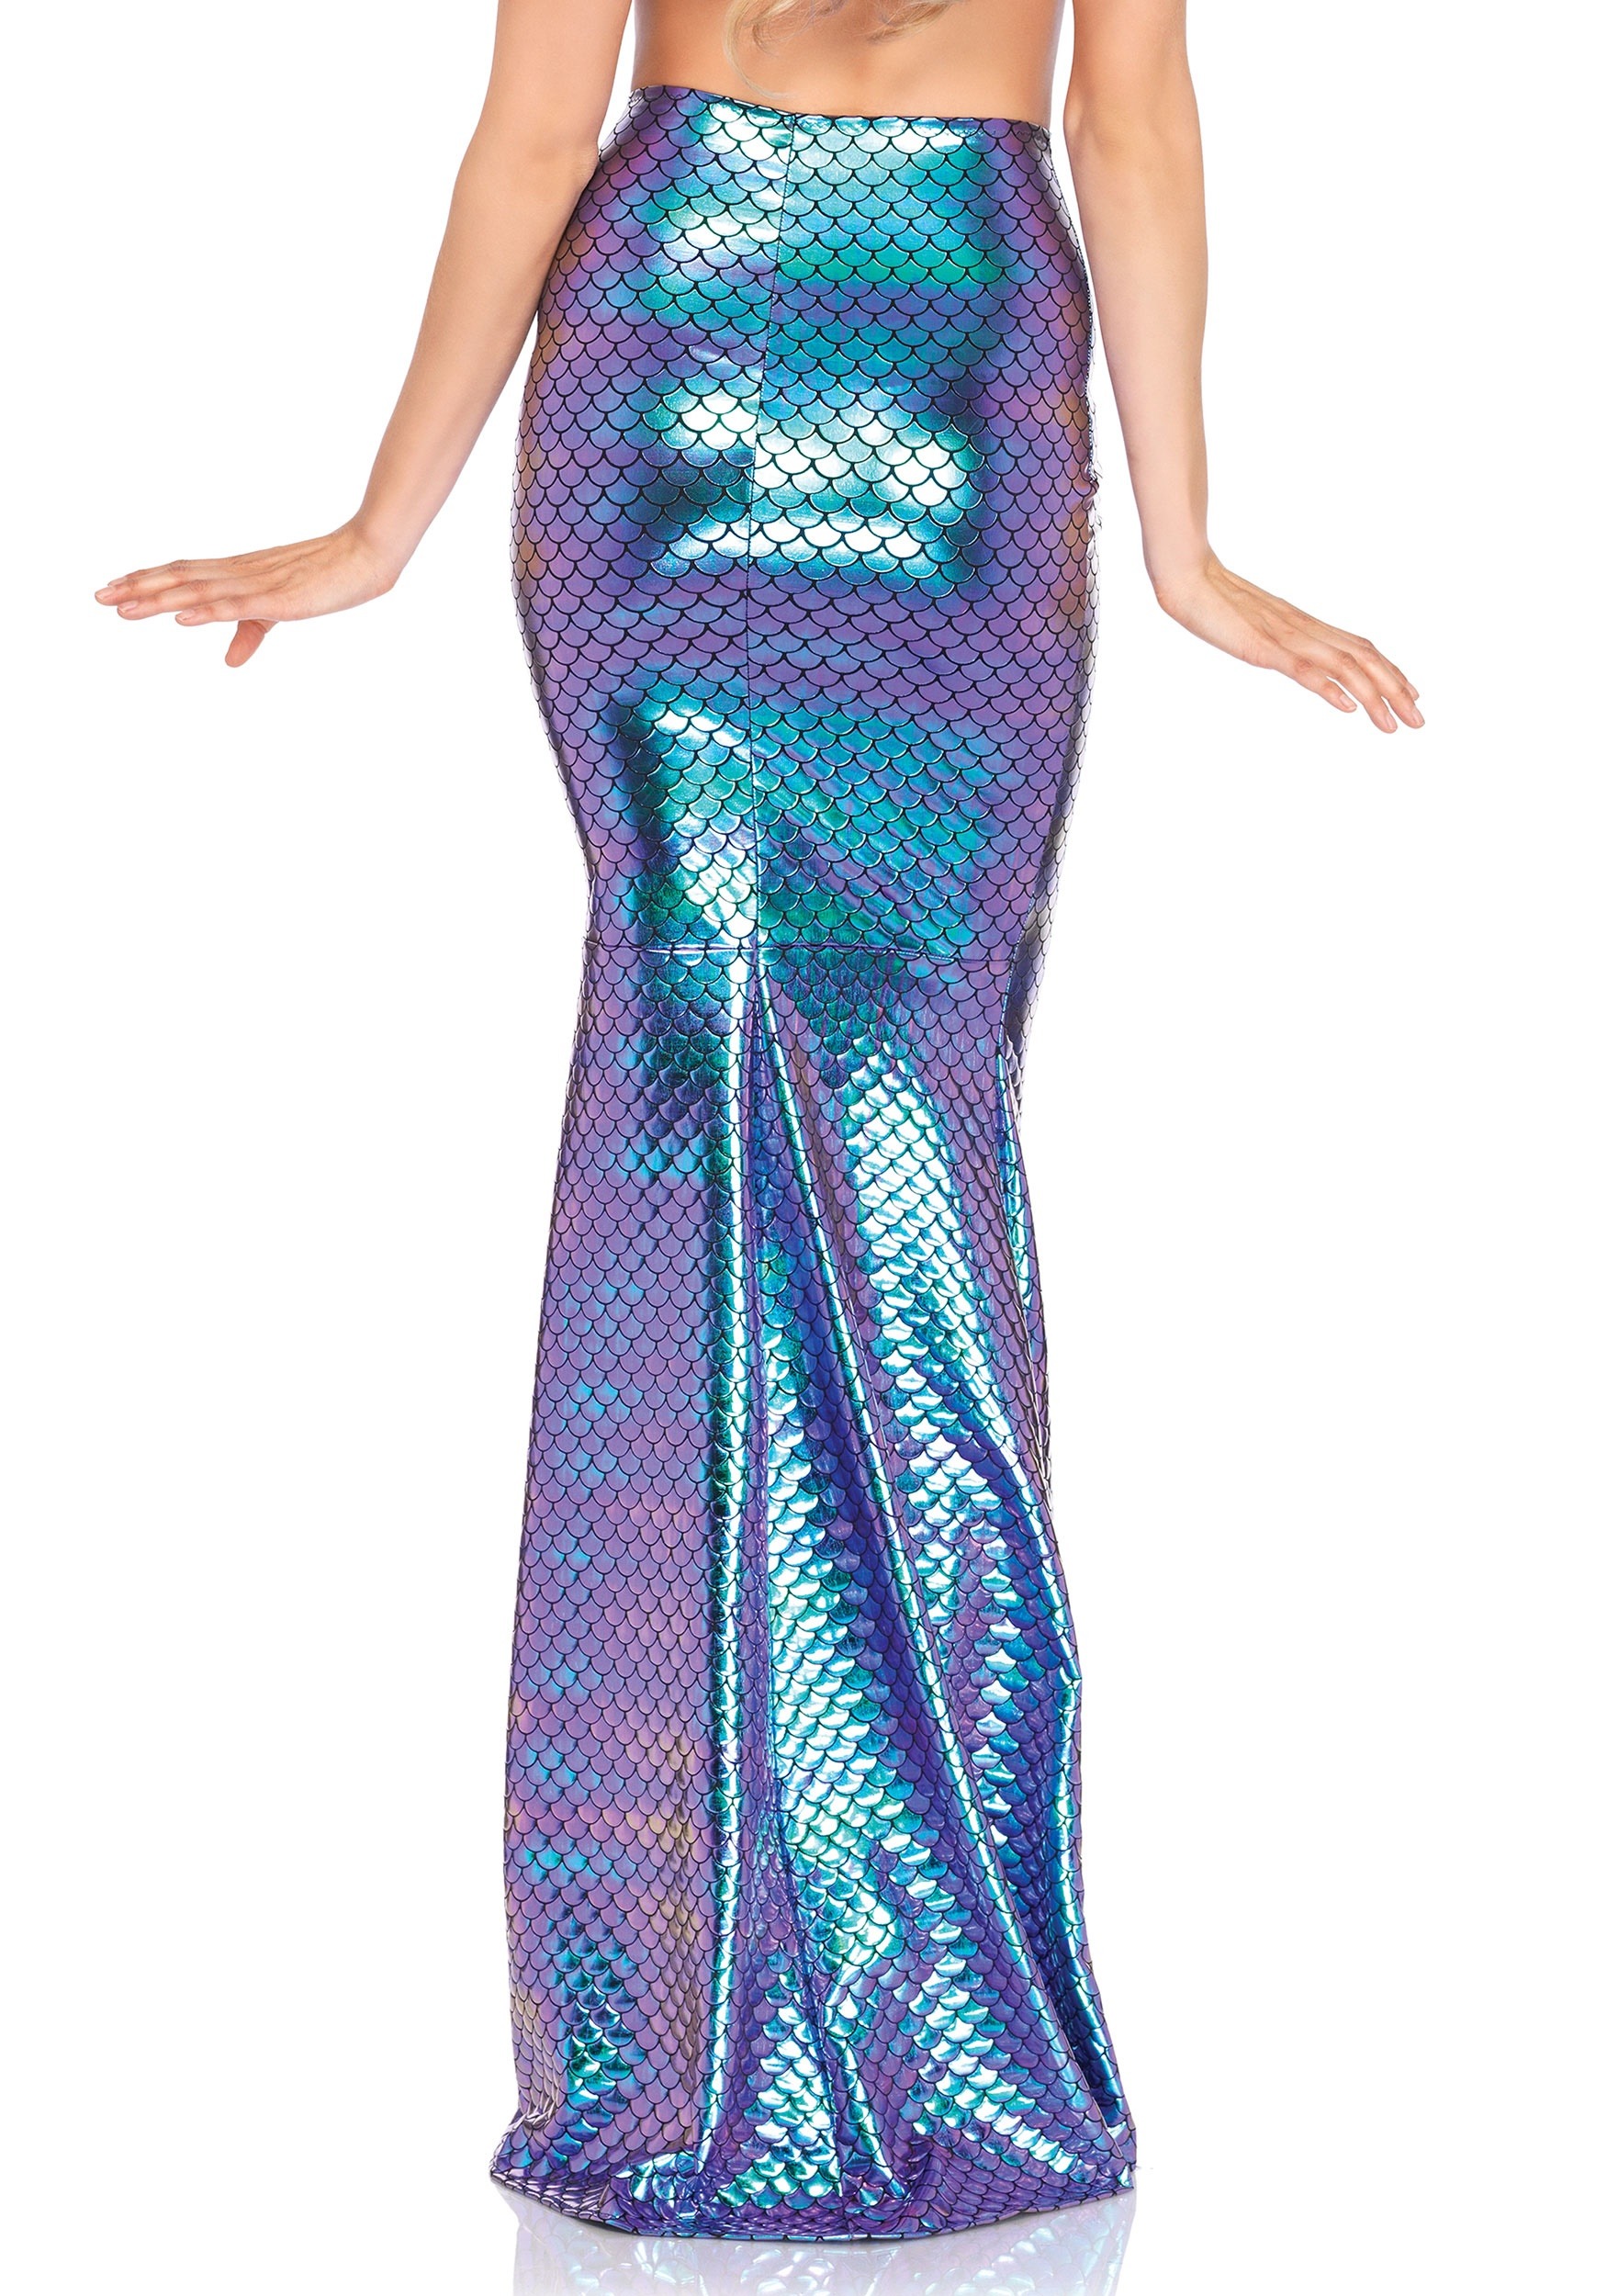 Deluxe Mermaid Tail Skirt For Women